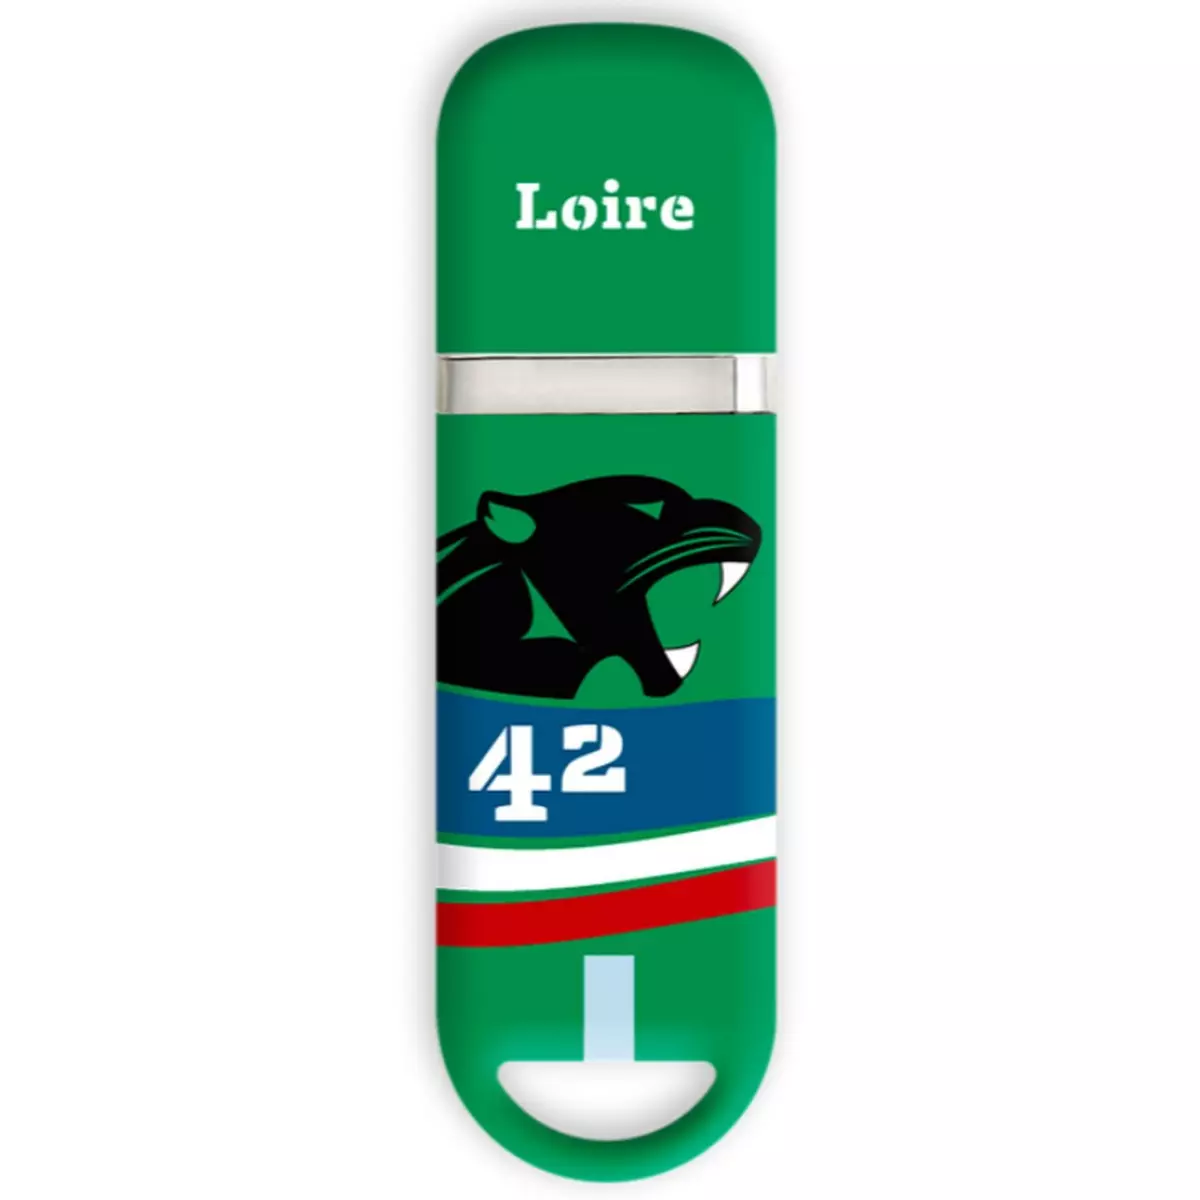 KEYOUEST Clé USB 32Go Loire - Vert, noir et bleu